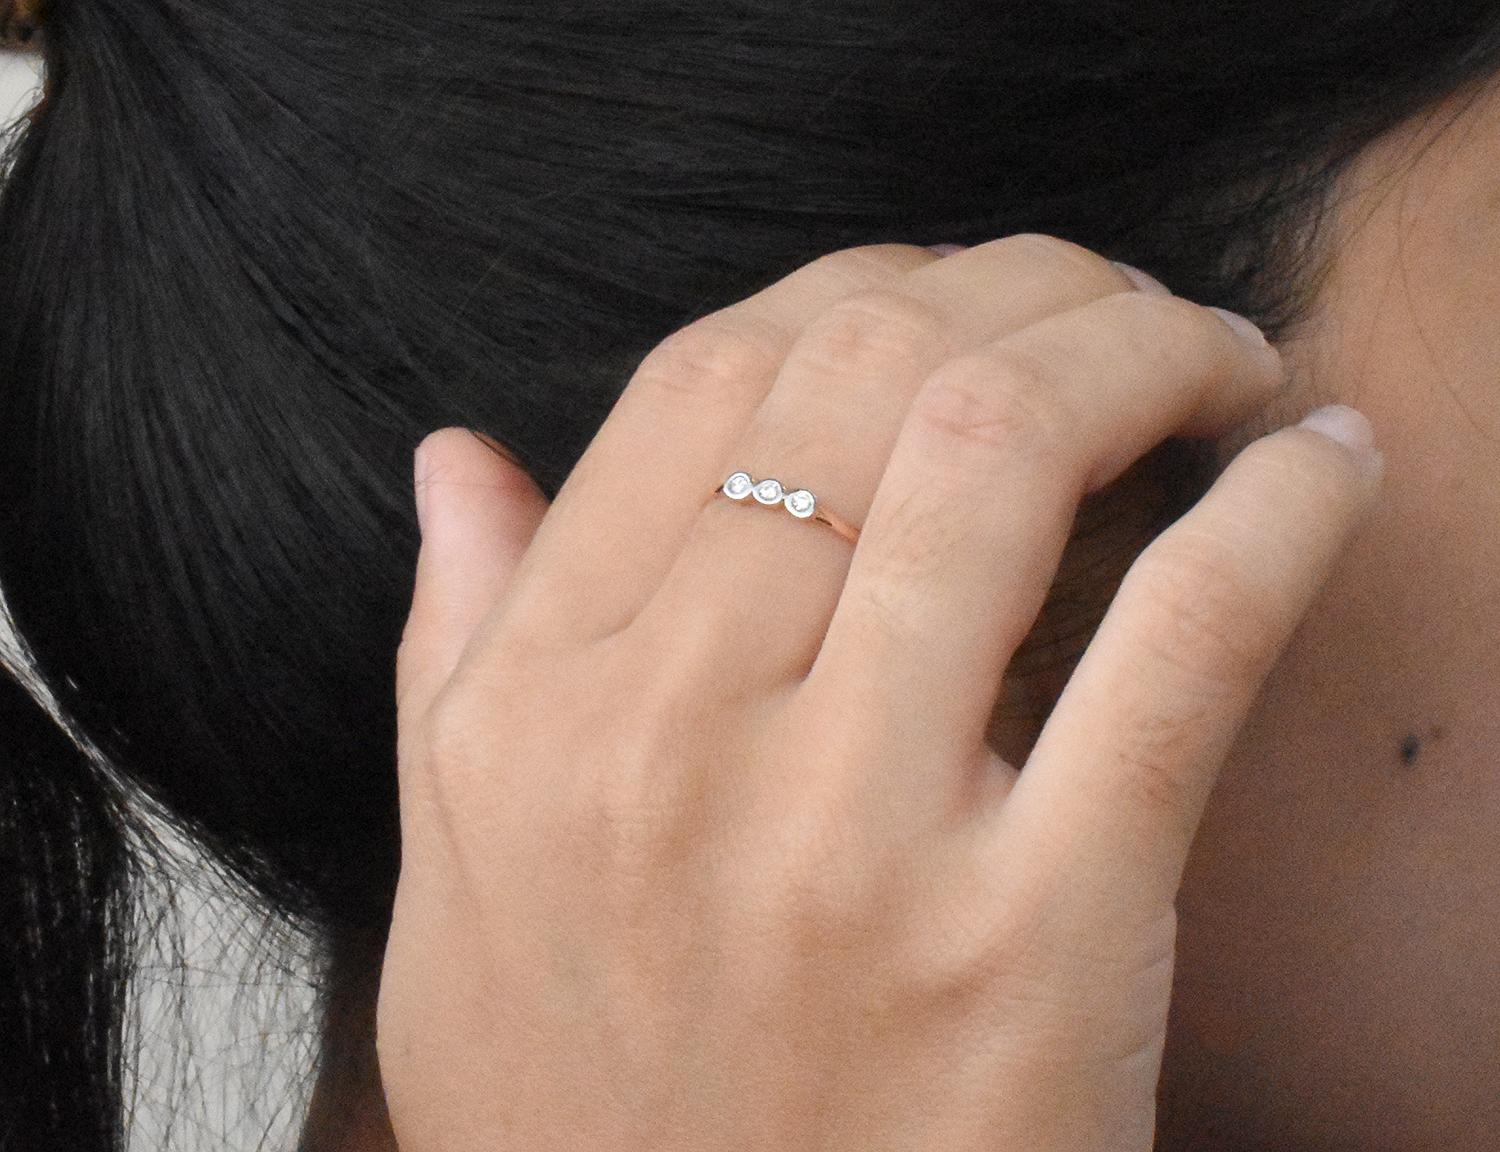 For Sale:  18k Gold Diamond 1.9 mm Ring Bezel Setting Three Diamond Ring Trio Diamond Ring 9